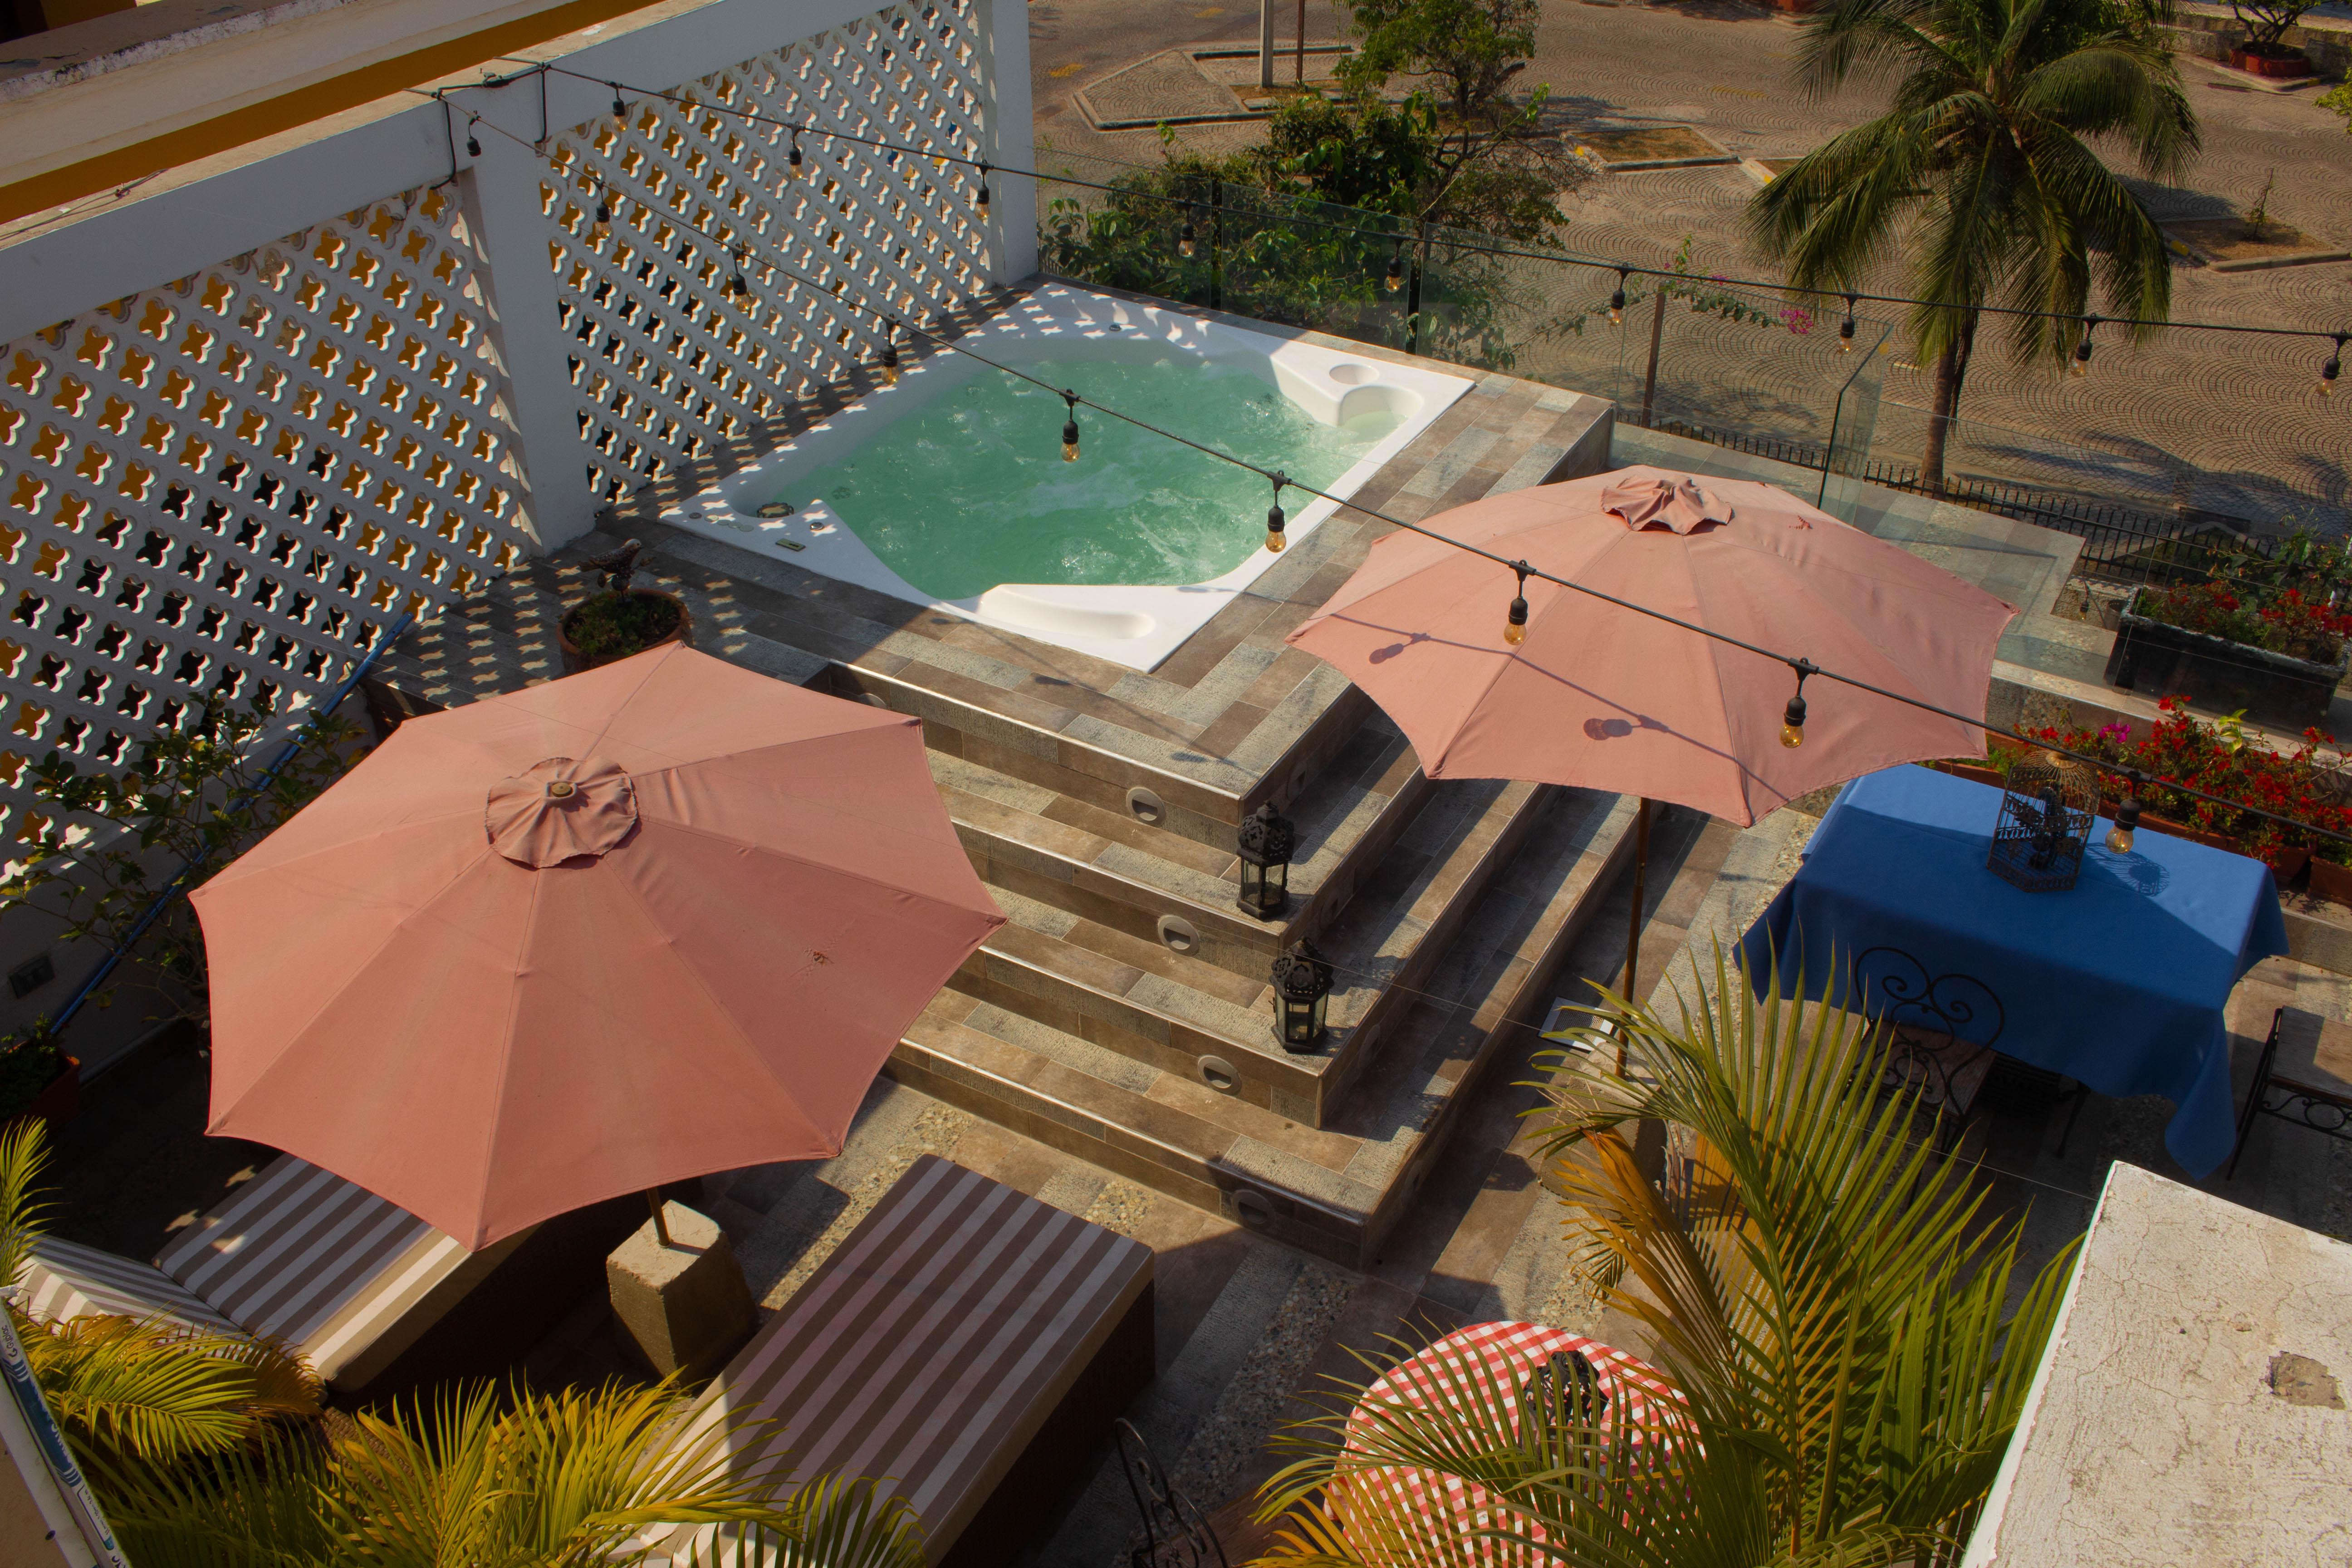 Hotel Dorado Plaza Calle Del Arsenal Cartagena 외부 사진